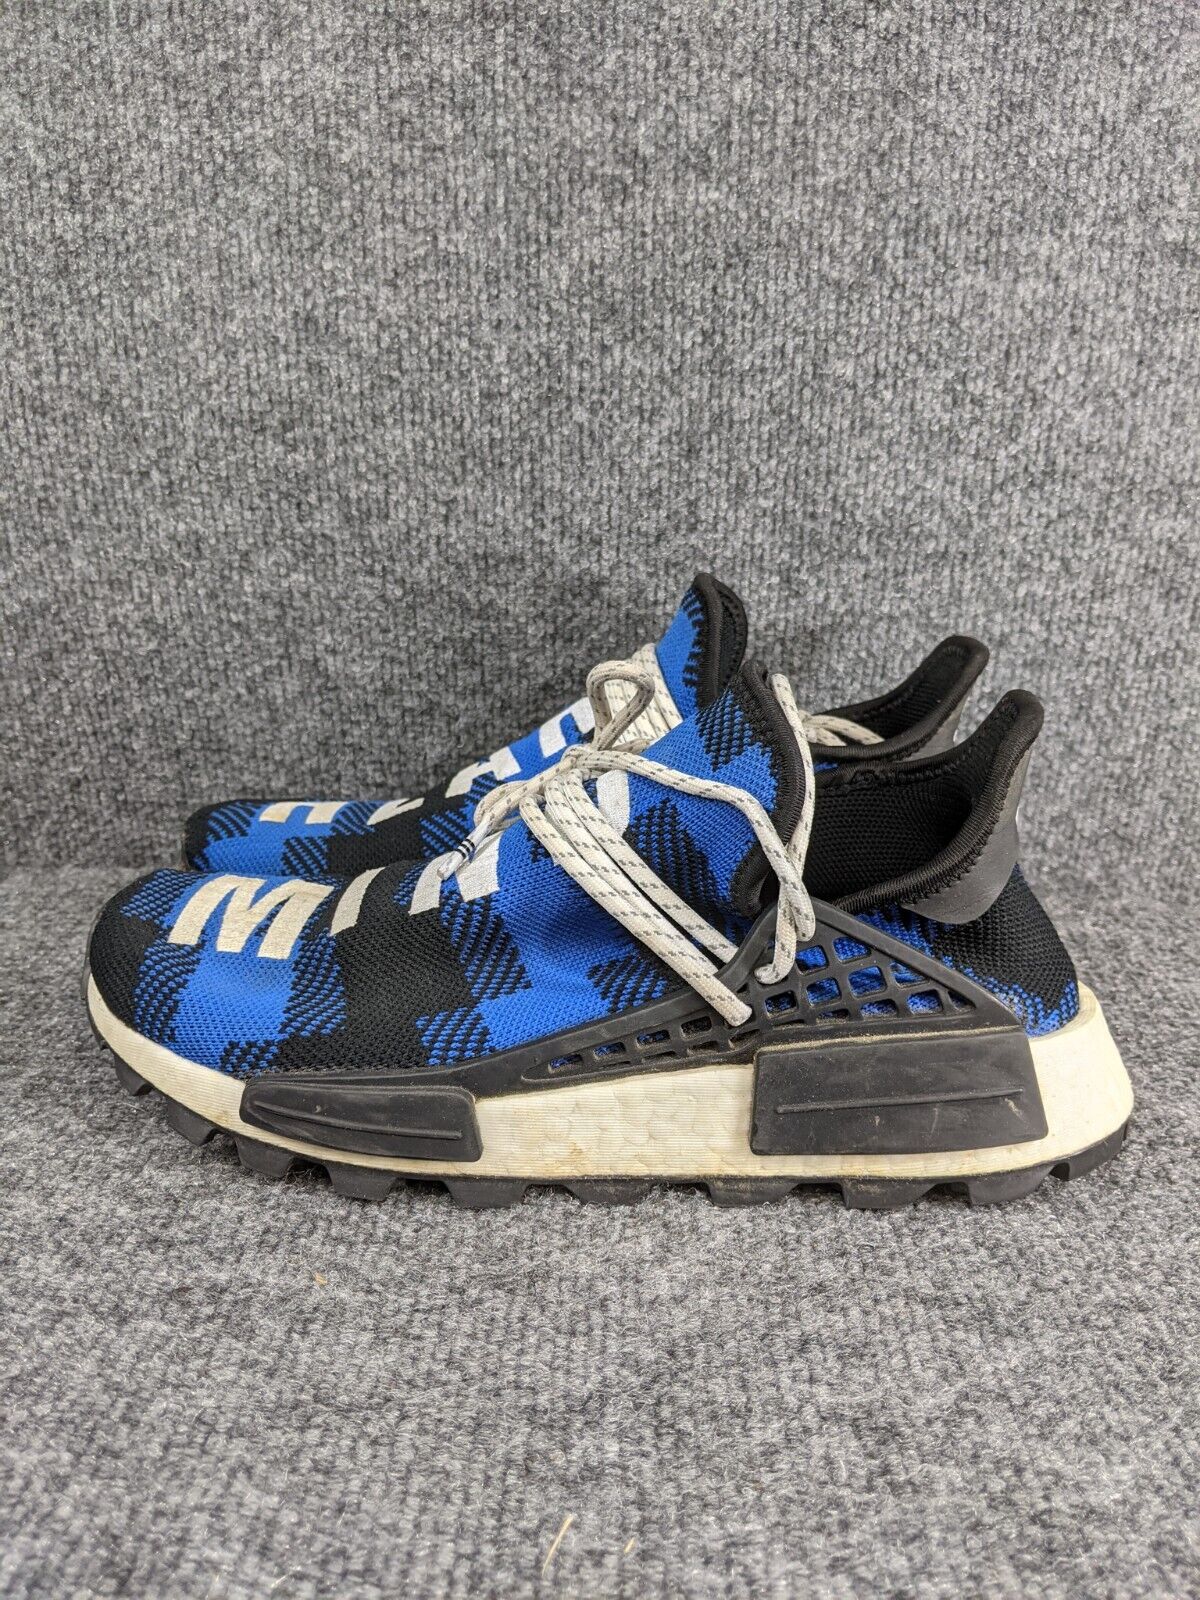 Adidas NMD HU Pharrell x BBC Blue Plaid White EF7387 Mens Shoe Size 8 | eBay